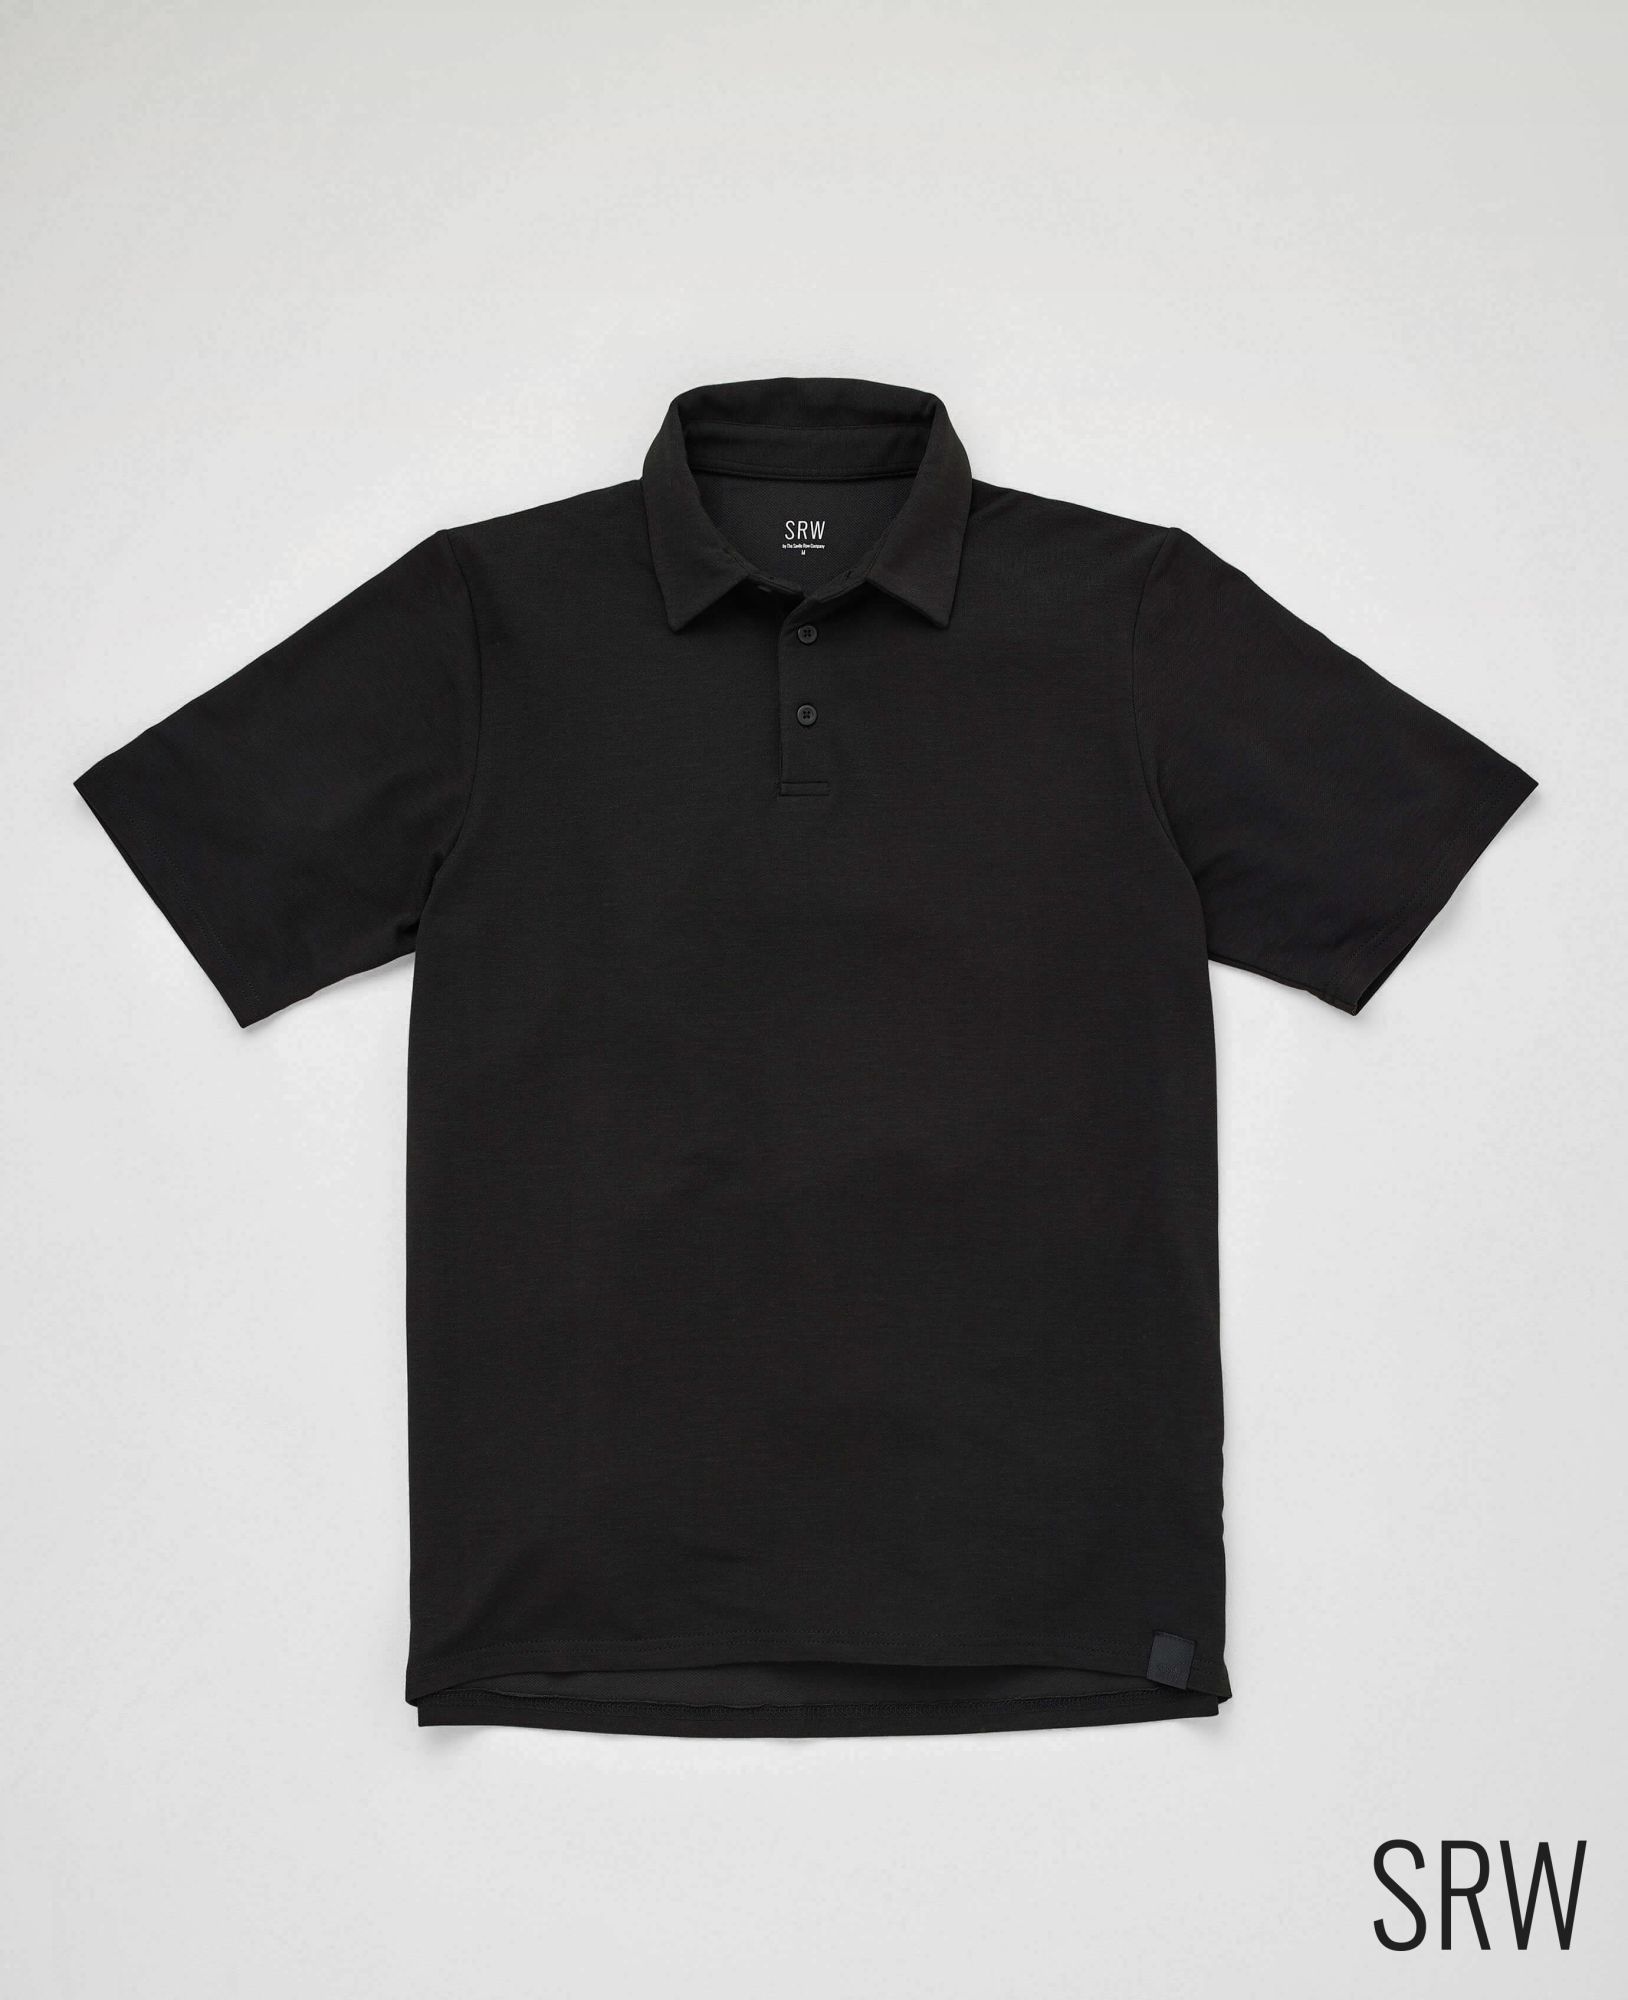 srw active non-iron black short sleeve polo shirt l